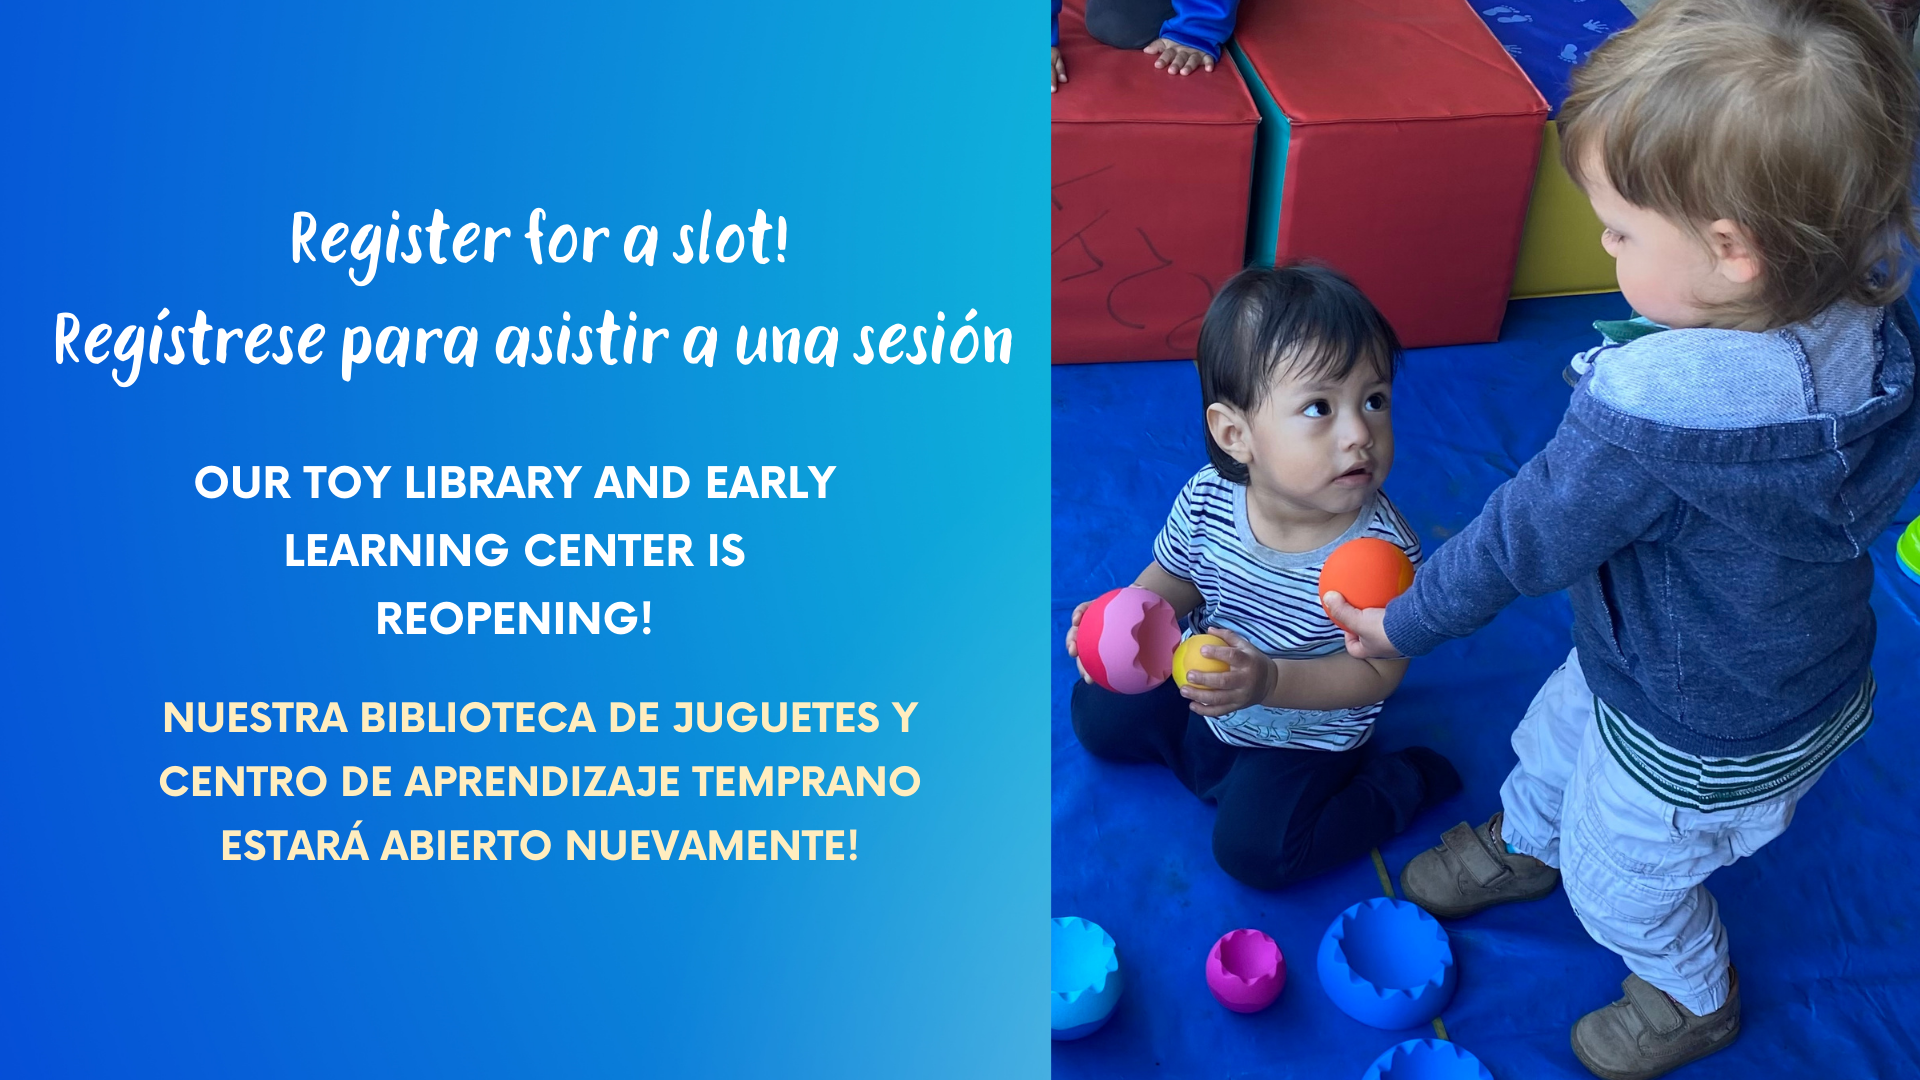 Our Toy Library and Early Learning Center is Reopening! ¡Nuestra Biblioteca de Juguetes y Centro de Aprendizaje Temprano estará abierto nuevamente!